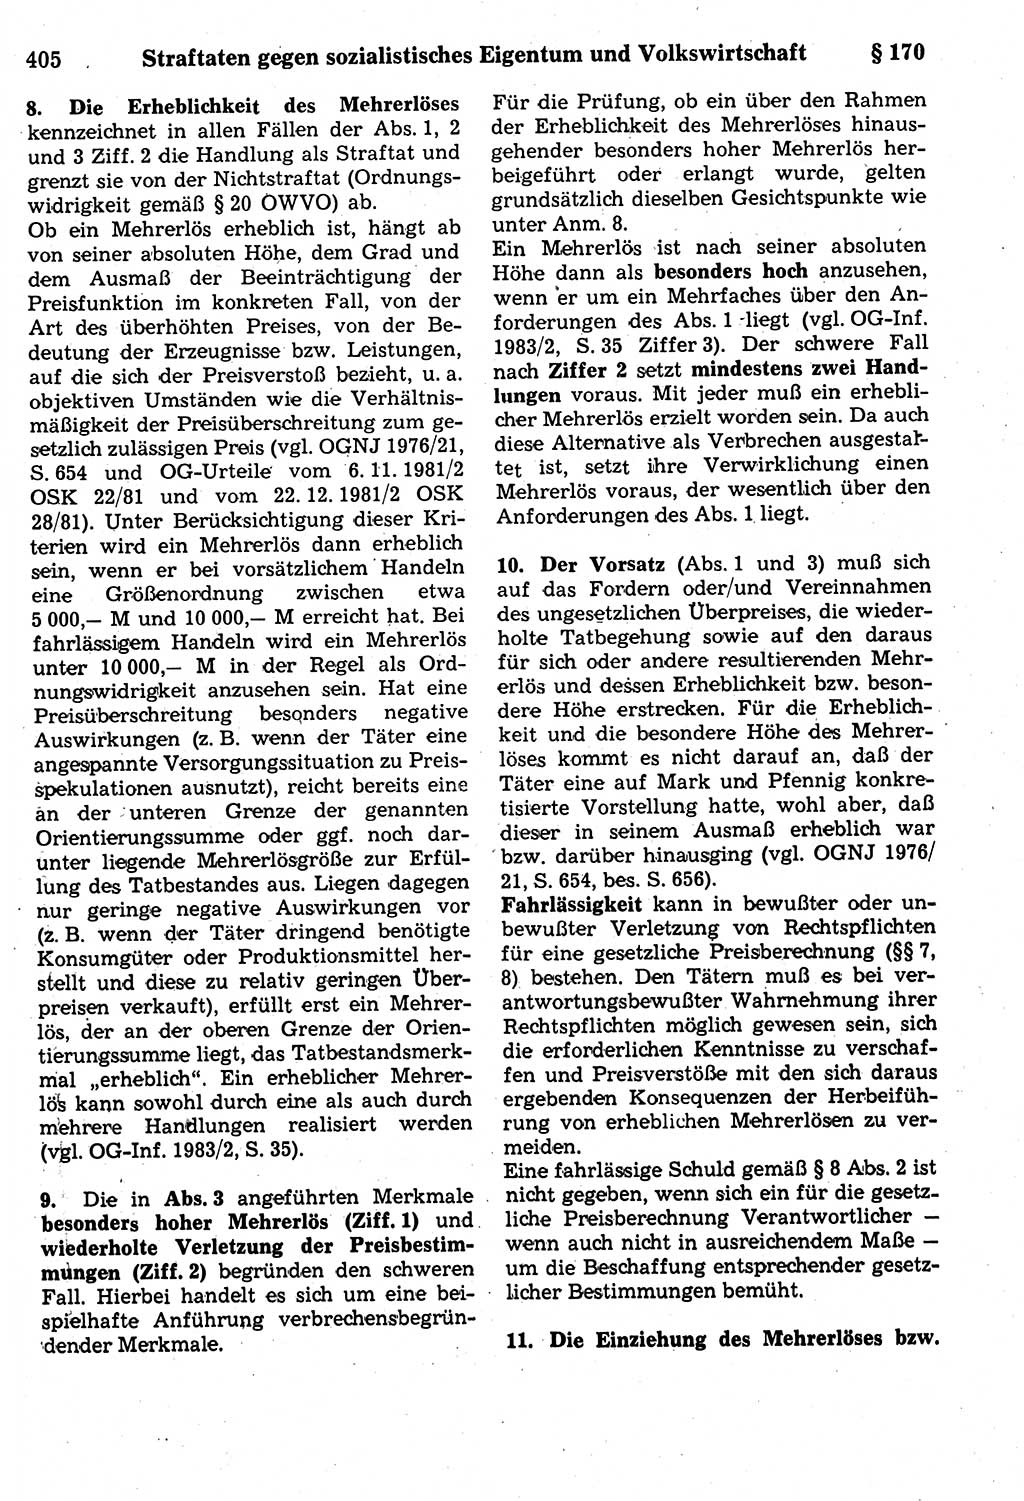 Strafrecht der Deutschen Demokratischen Republik (DDR), Kommentar zum Strafgesetzbuch (StGB) 1987, Seite 405 (Strafr. DDR Komm. StGB 1987, S. 405)